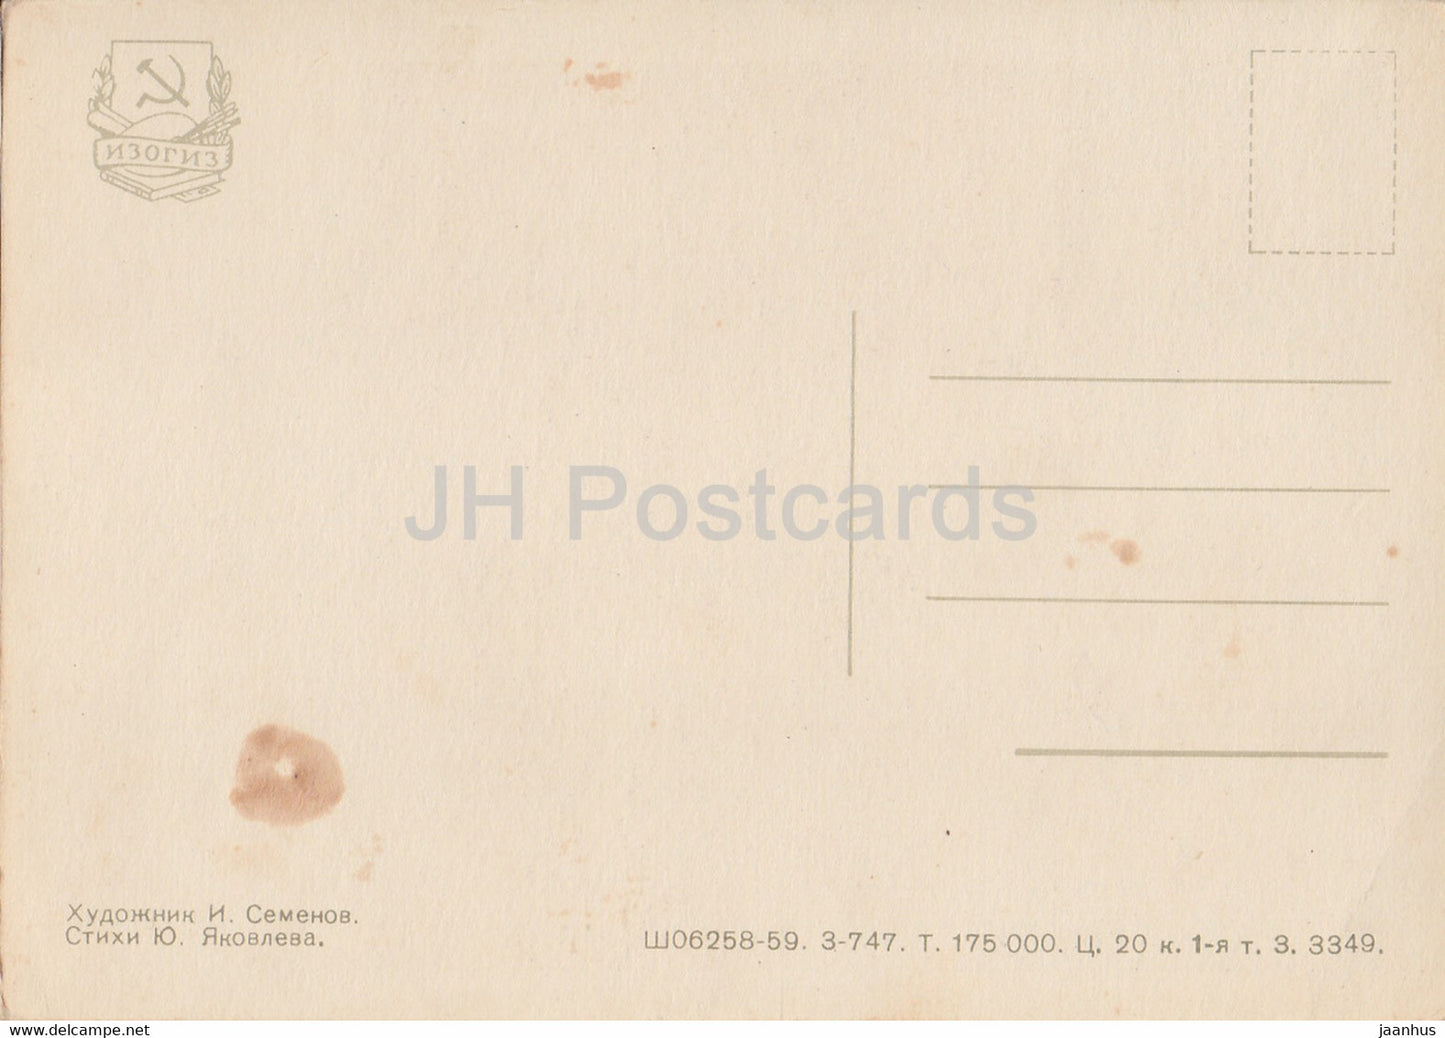 Petja Worobjew – Schule – Abschreiben – Pioniere – Illustration von Semjonow – 1959 – alte Postkarte – Russland UdSSR – unbenutzt